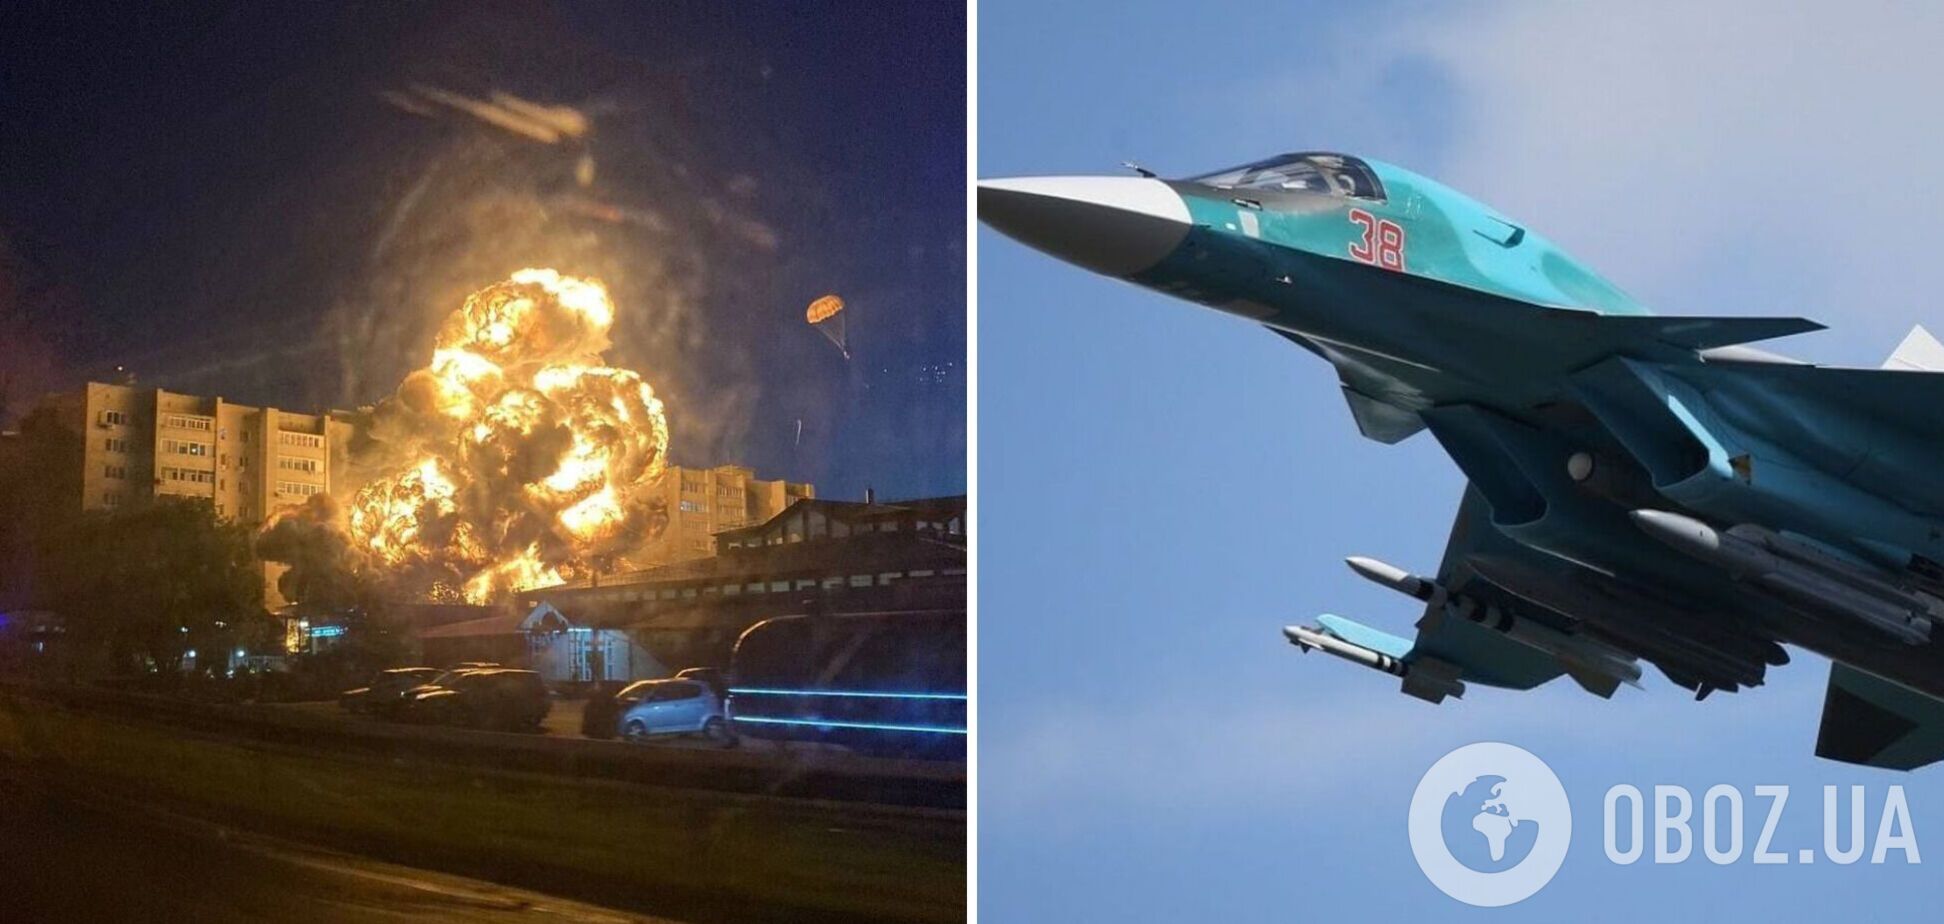 В российском Ейске военный самолет упал на жилой дом: количество погибших выросло до 13 человек. Фото и видео